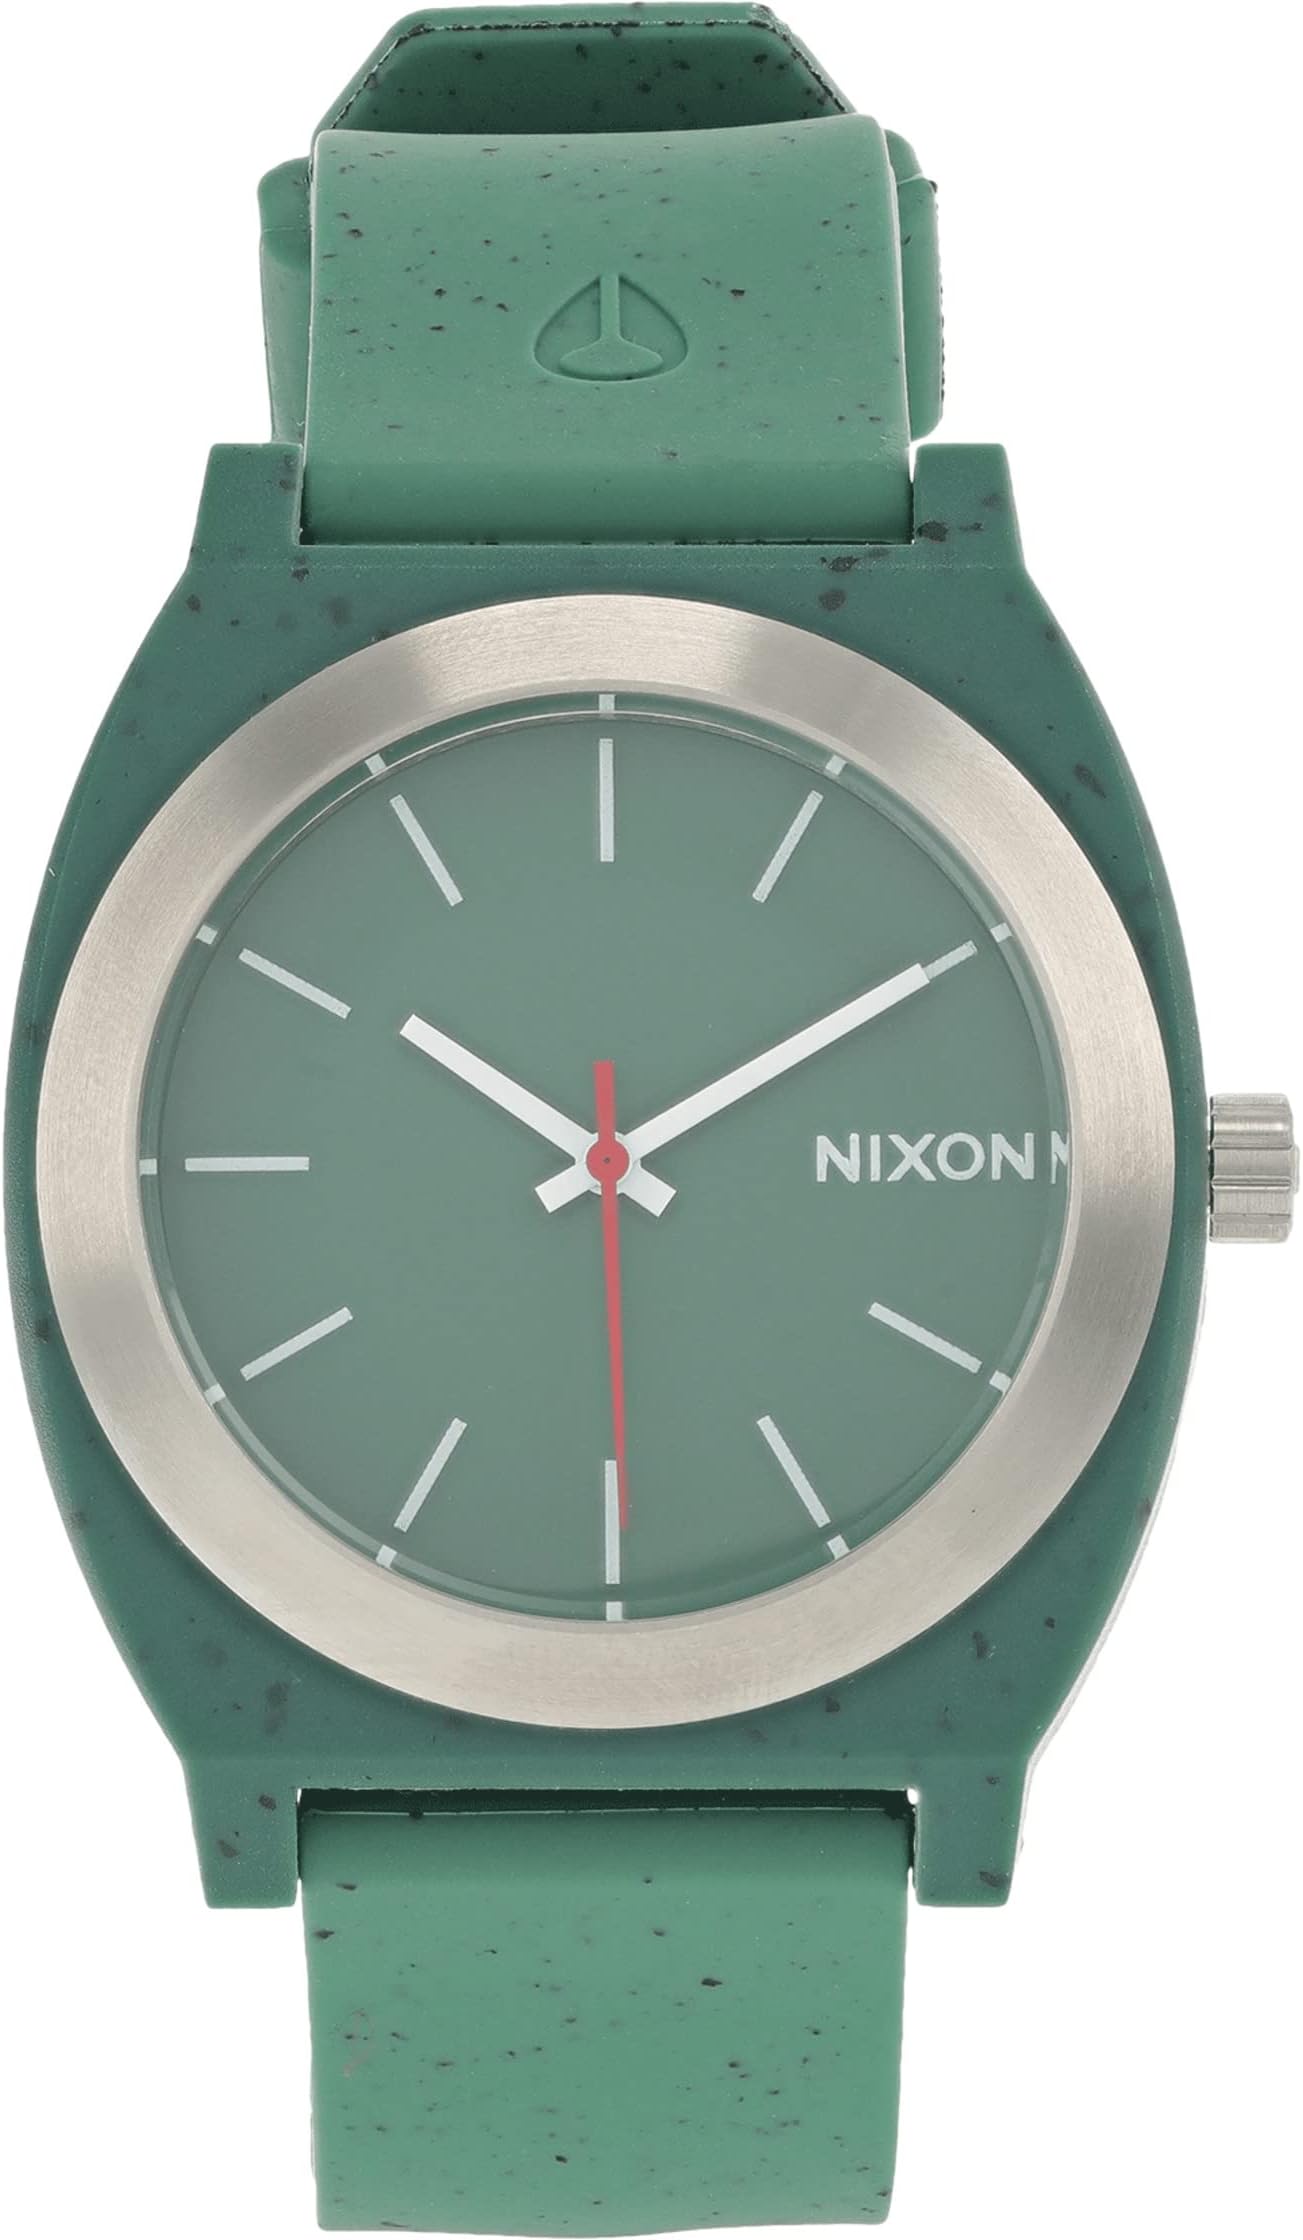 Часы Time Teller OPP Nixon, цвет Olive Speckle цена и фото